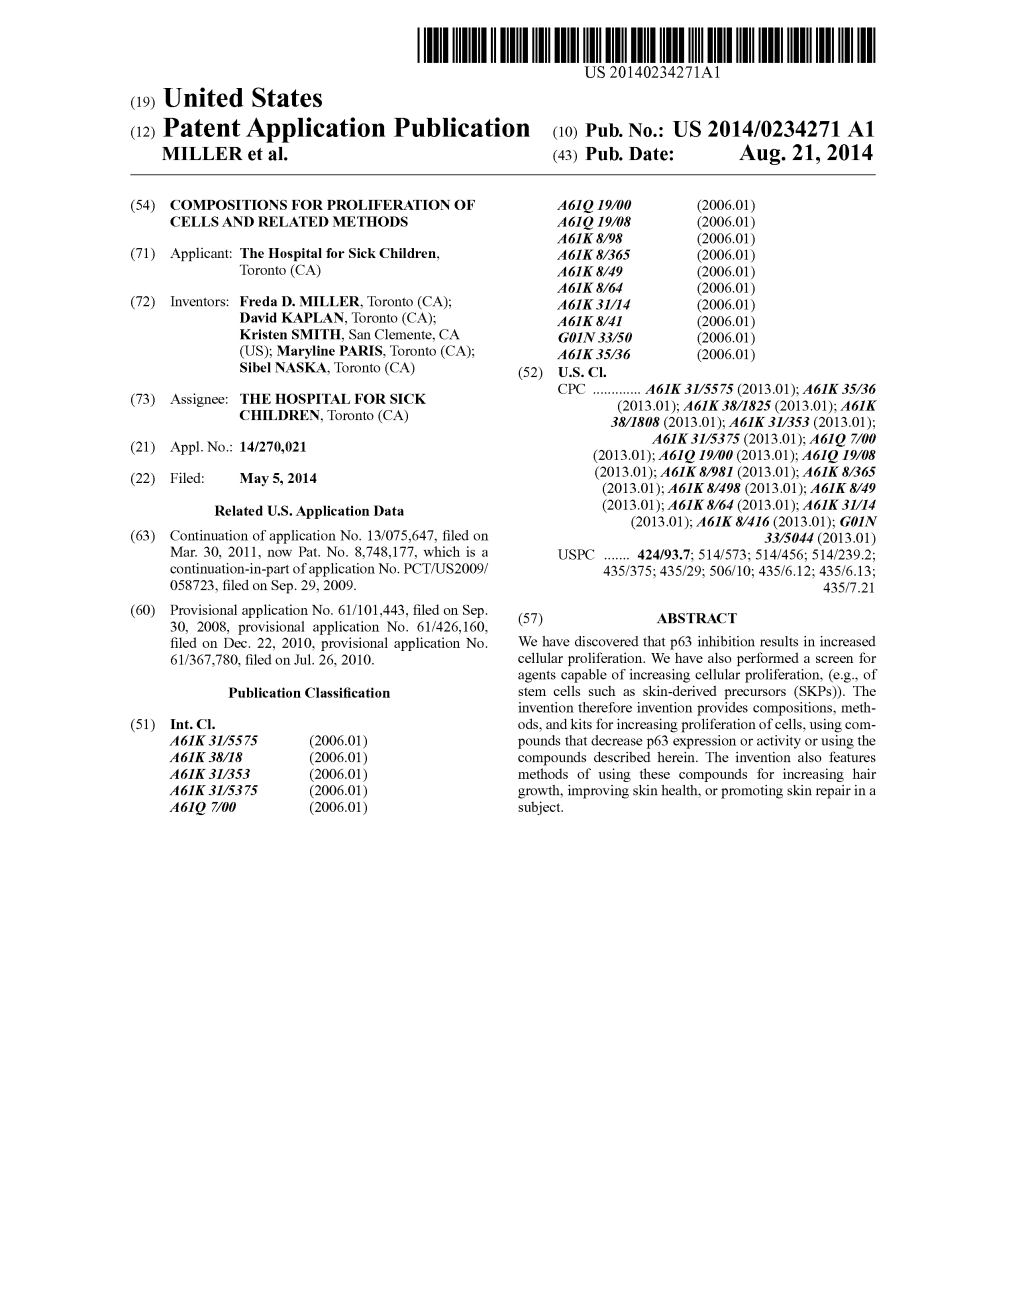 (12) Patent Application Publication (10) Pub. No.: US 2014/0234271 A1 MILLER Et Al